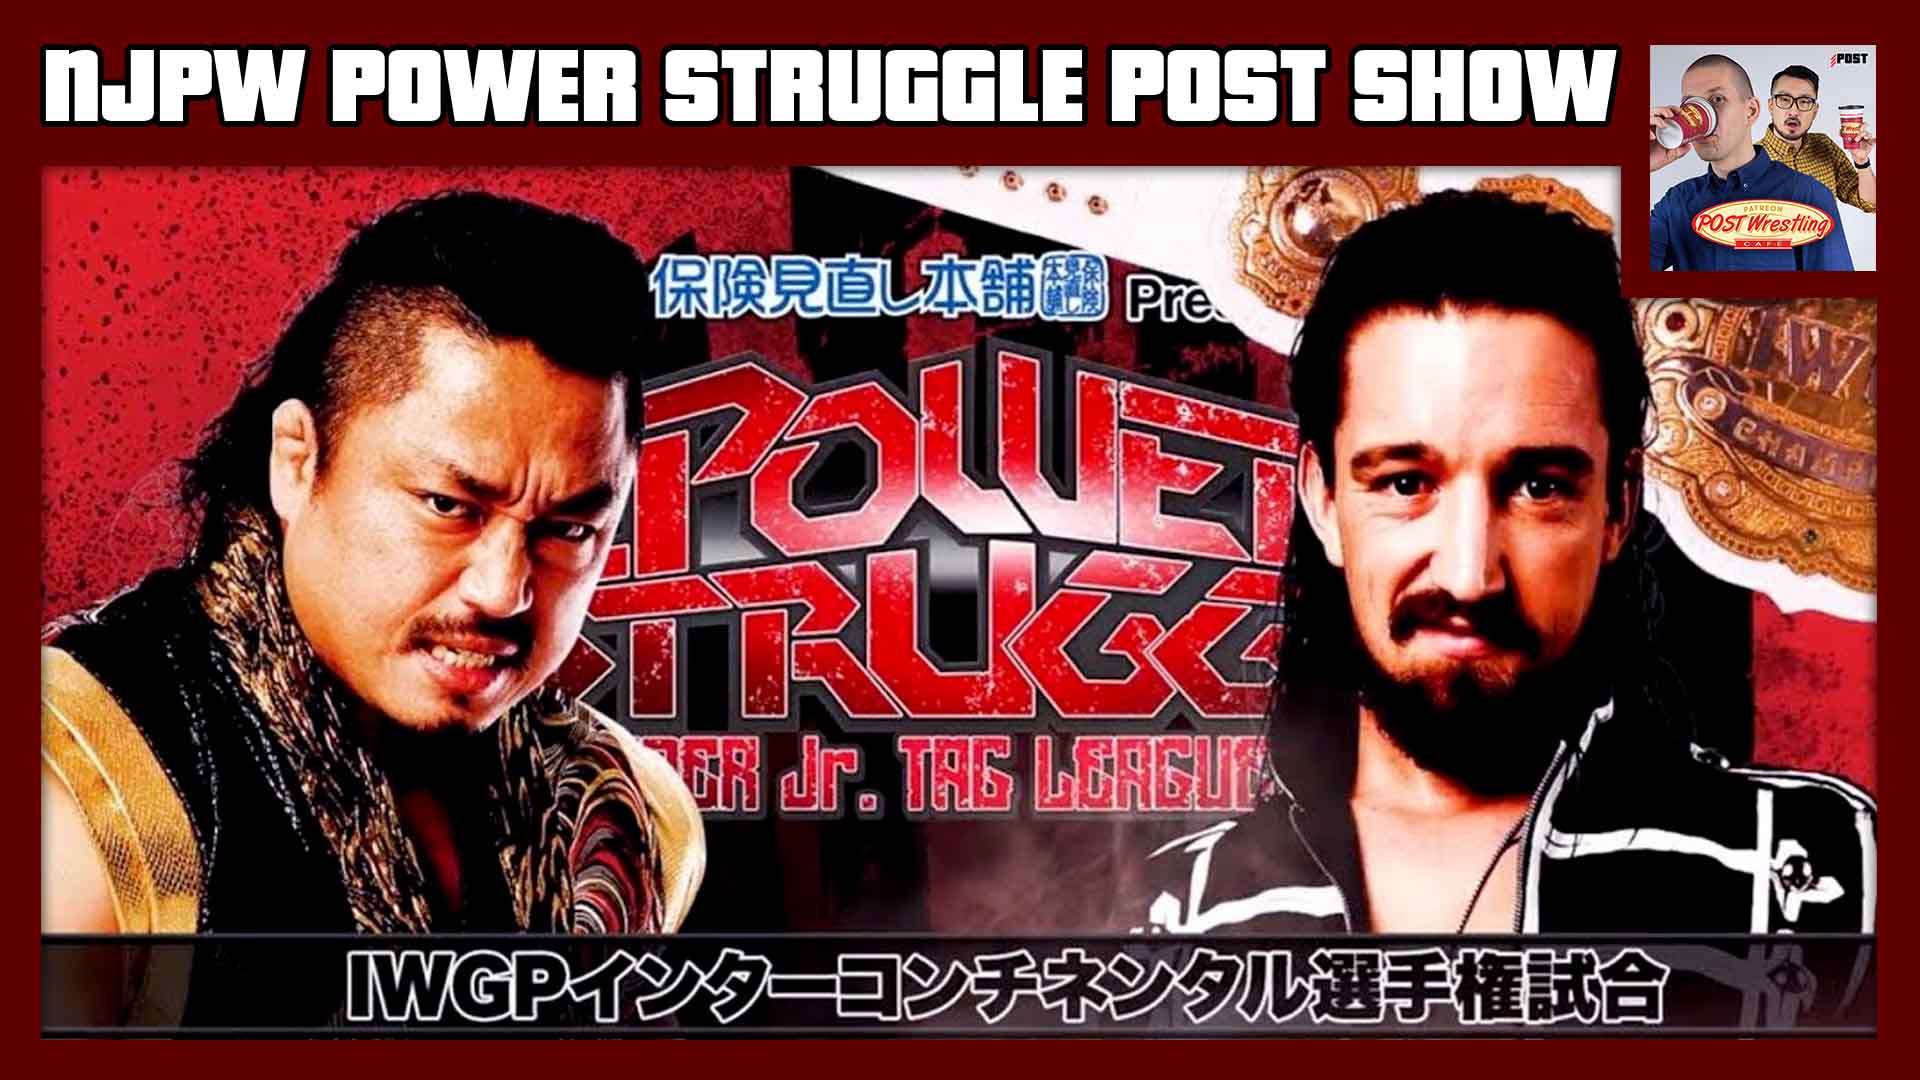 NJPW Power Struggle 2019 POST Show POST Wrestling WWE AEW NXT NJPW